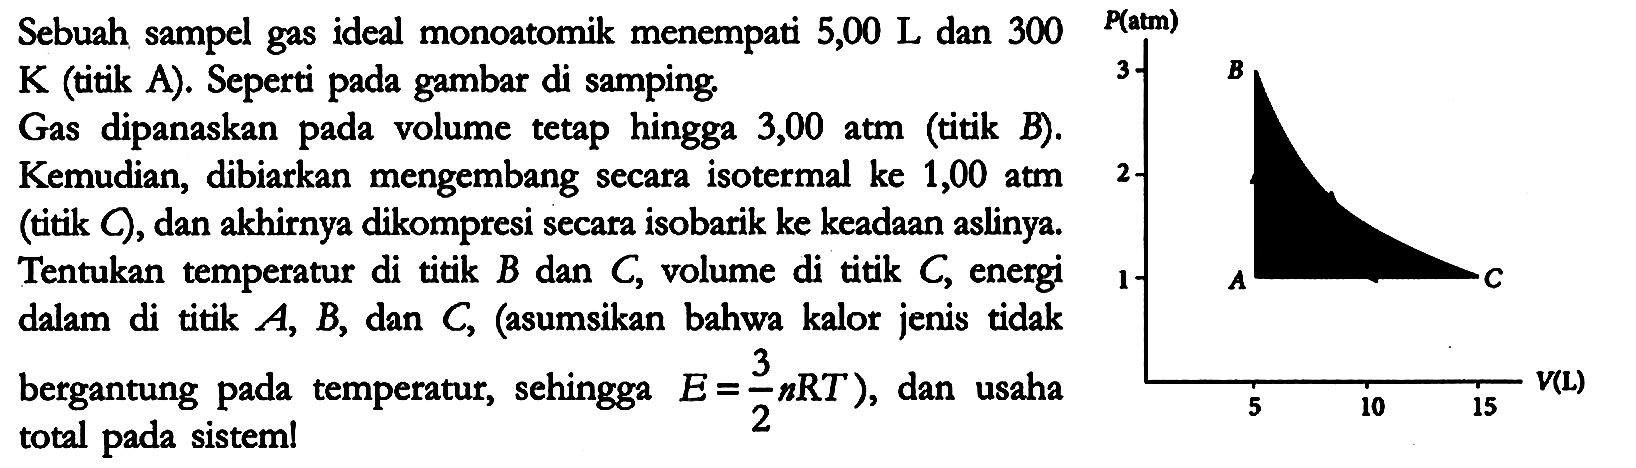 Sebuah sampel gas ideal monoatomik menempati 5,00 L dan 300 K (titik A). Seperti pada gambar di samping. Gas dipanaskan pada volume tetap hingga 3,00 atm (titik B). Kemudian, dibiarkan mengembang secara isotermal ke 1,00 atm (titik C), dan akhirnya dikompresi secara isobarik ke keadaan aslinya. Tentukan temperatur di titik B dan C, volume di titik  C, energi dalam di titik A, B, dan C, (asumsikan bahwa kalor jenis tidak bergantung pada temperatur, sehingga E = 3/2 nRT), dan usaha total pada sistem!

P(atm) 3 2 1 B A C
5 10 15 V(L)